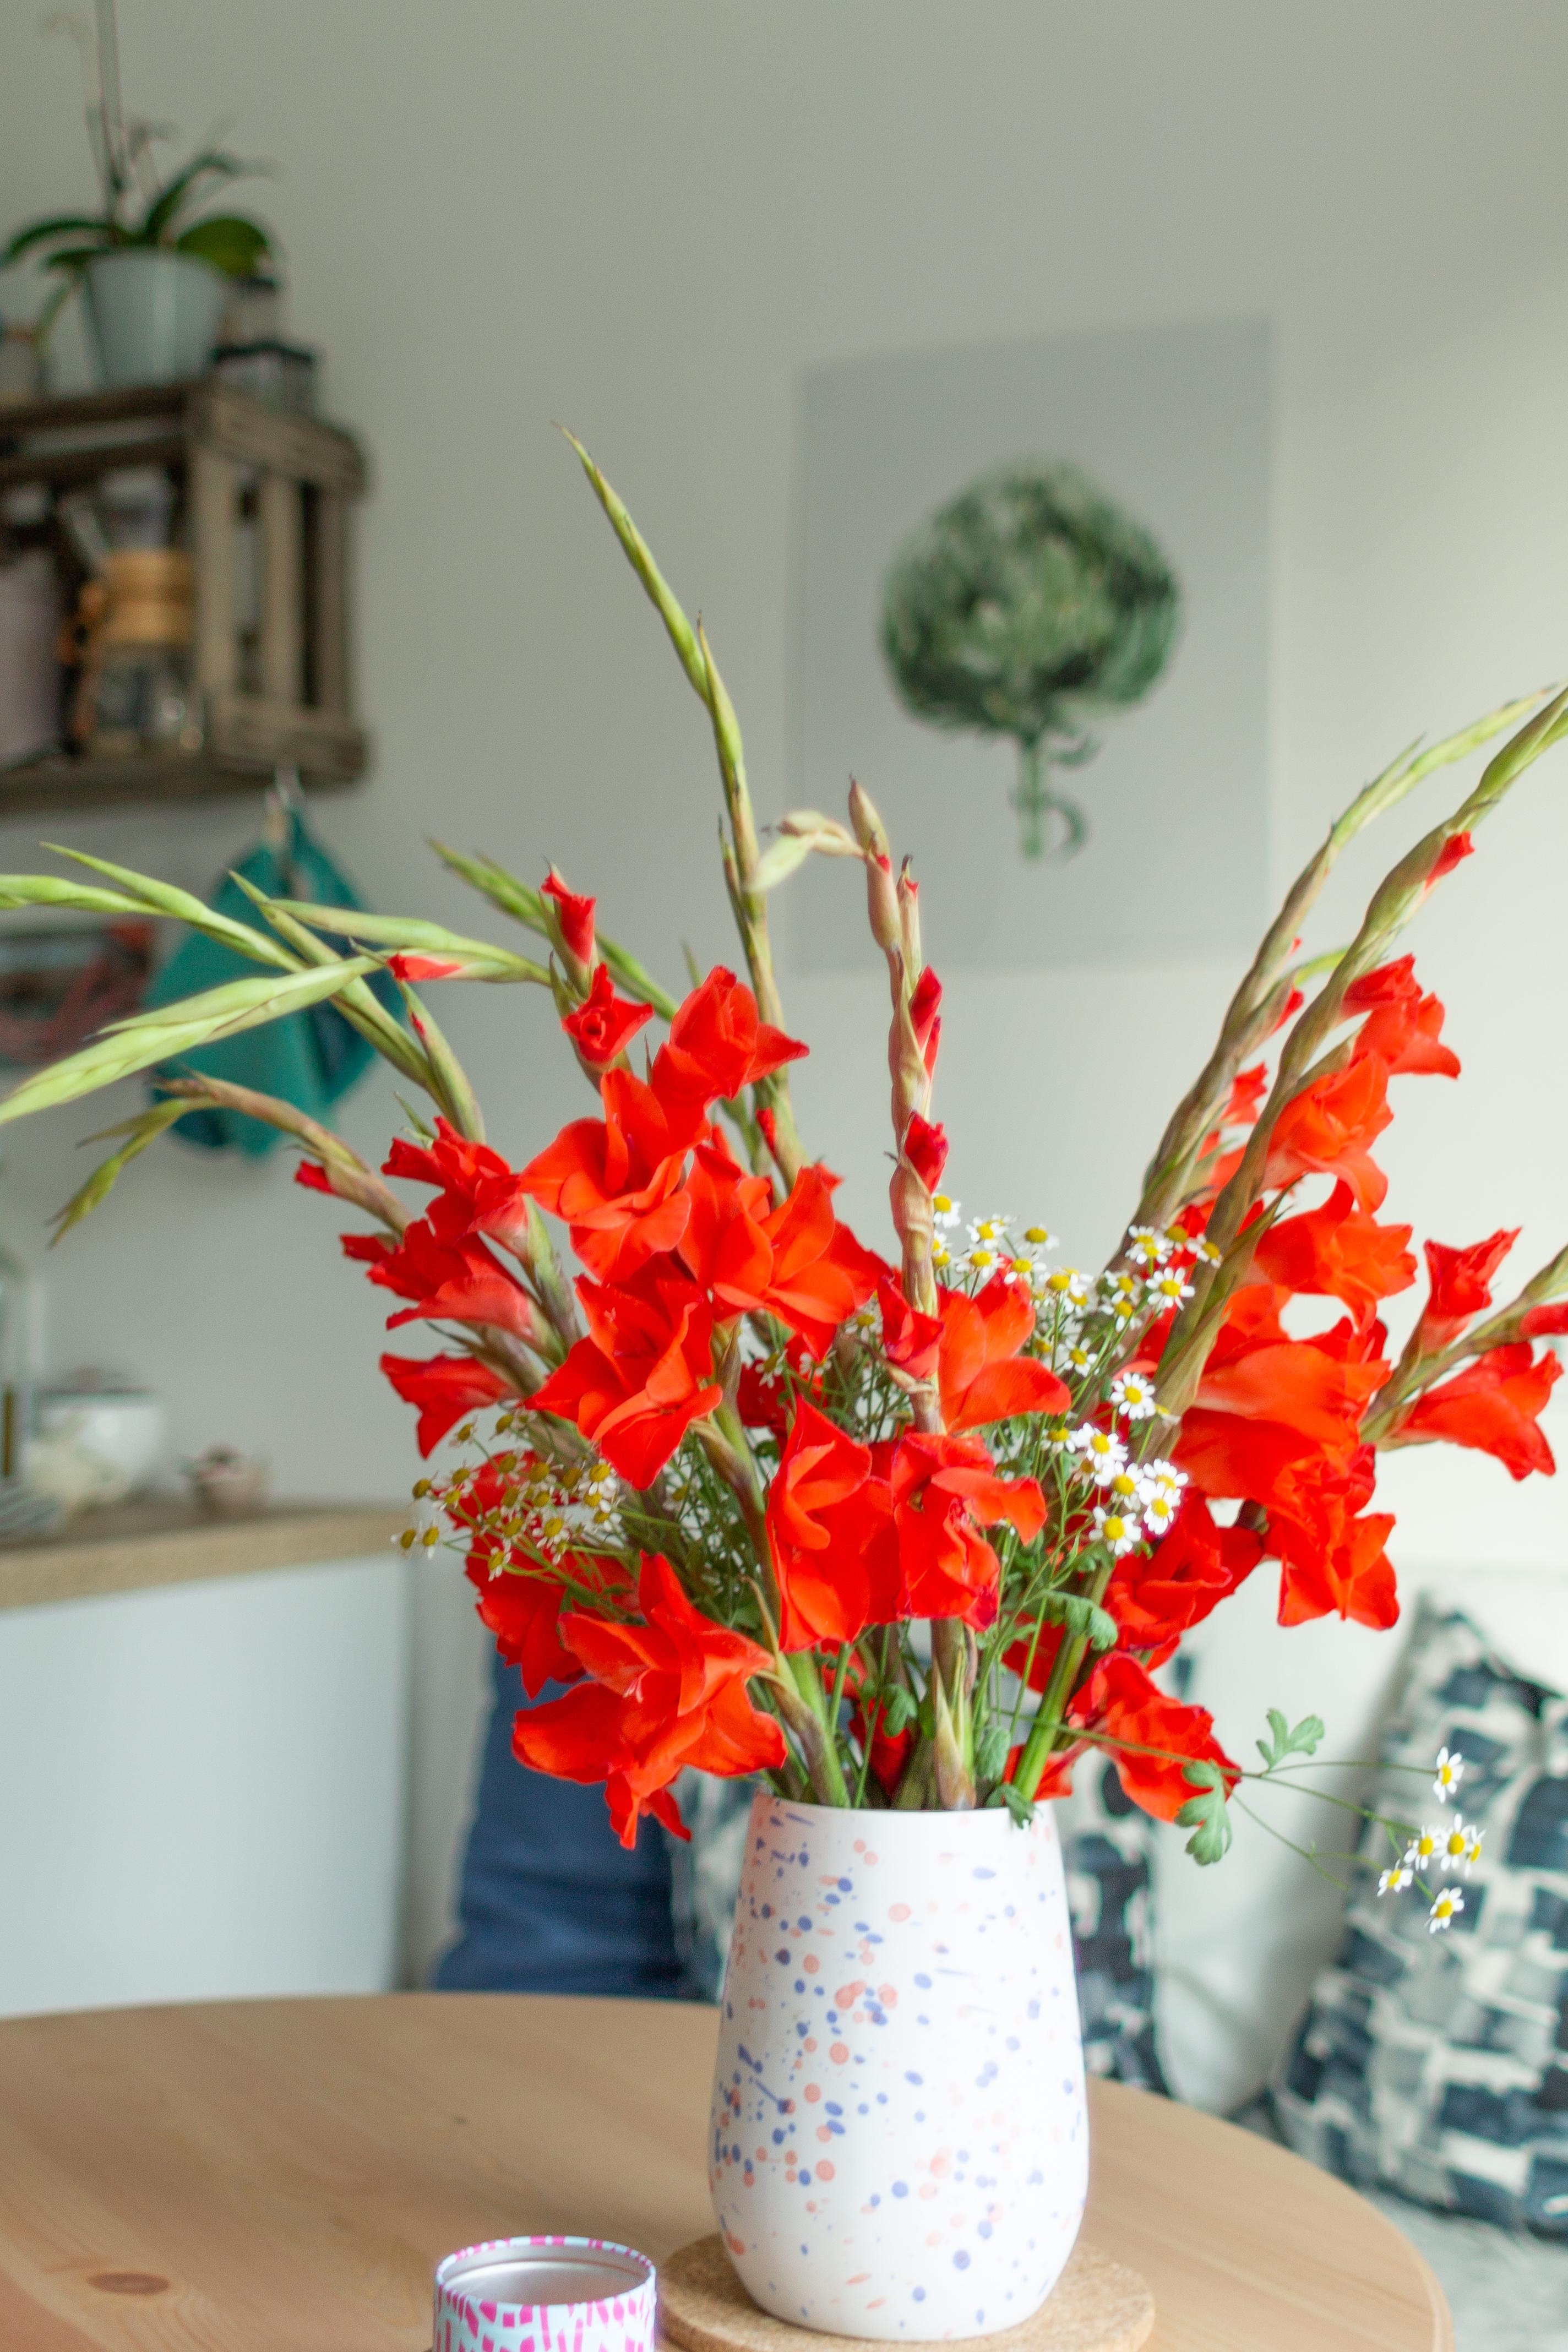 Ich mag Gladiolen einfach! #gladiolen #küche #sommer #colorfulliving